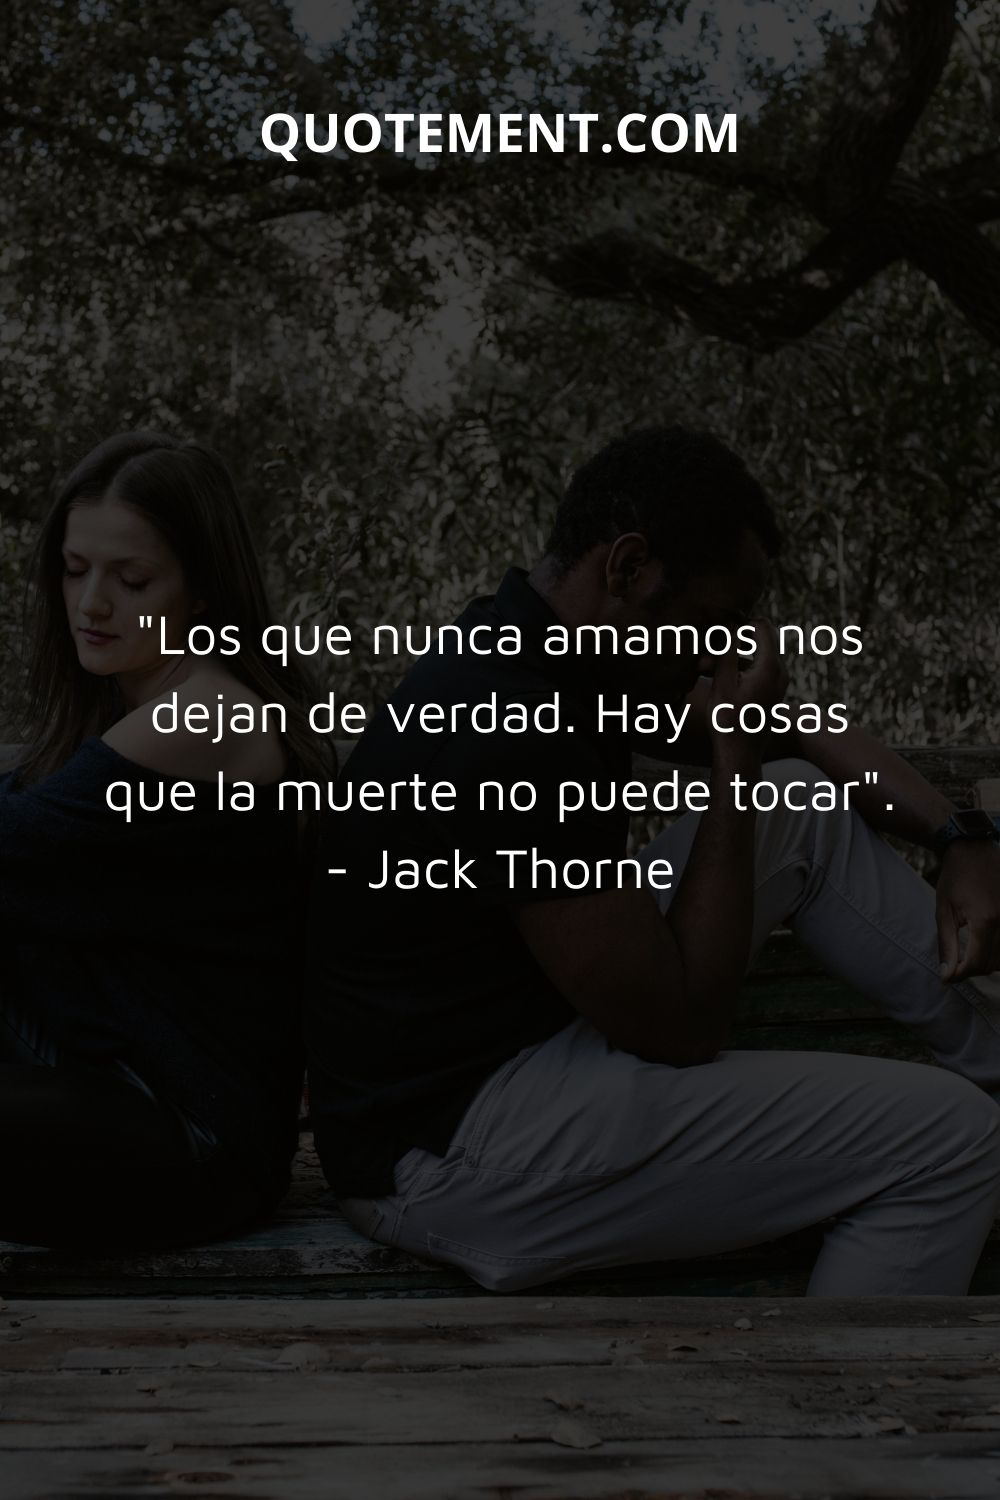 "Los que nunca amamos nos dejan de verdad. Hay cosas que la muerte no puede tocar". - Jack Thorne